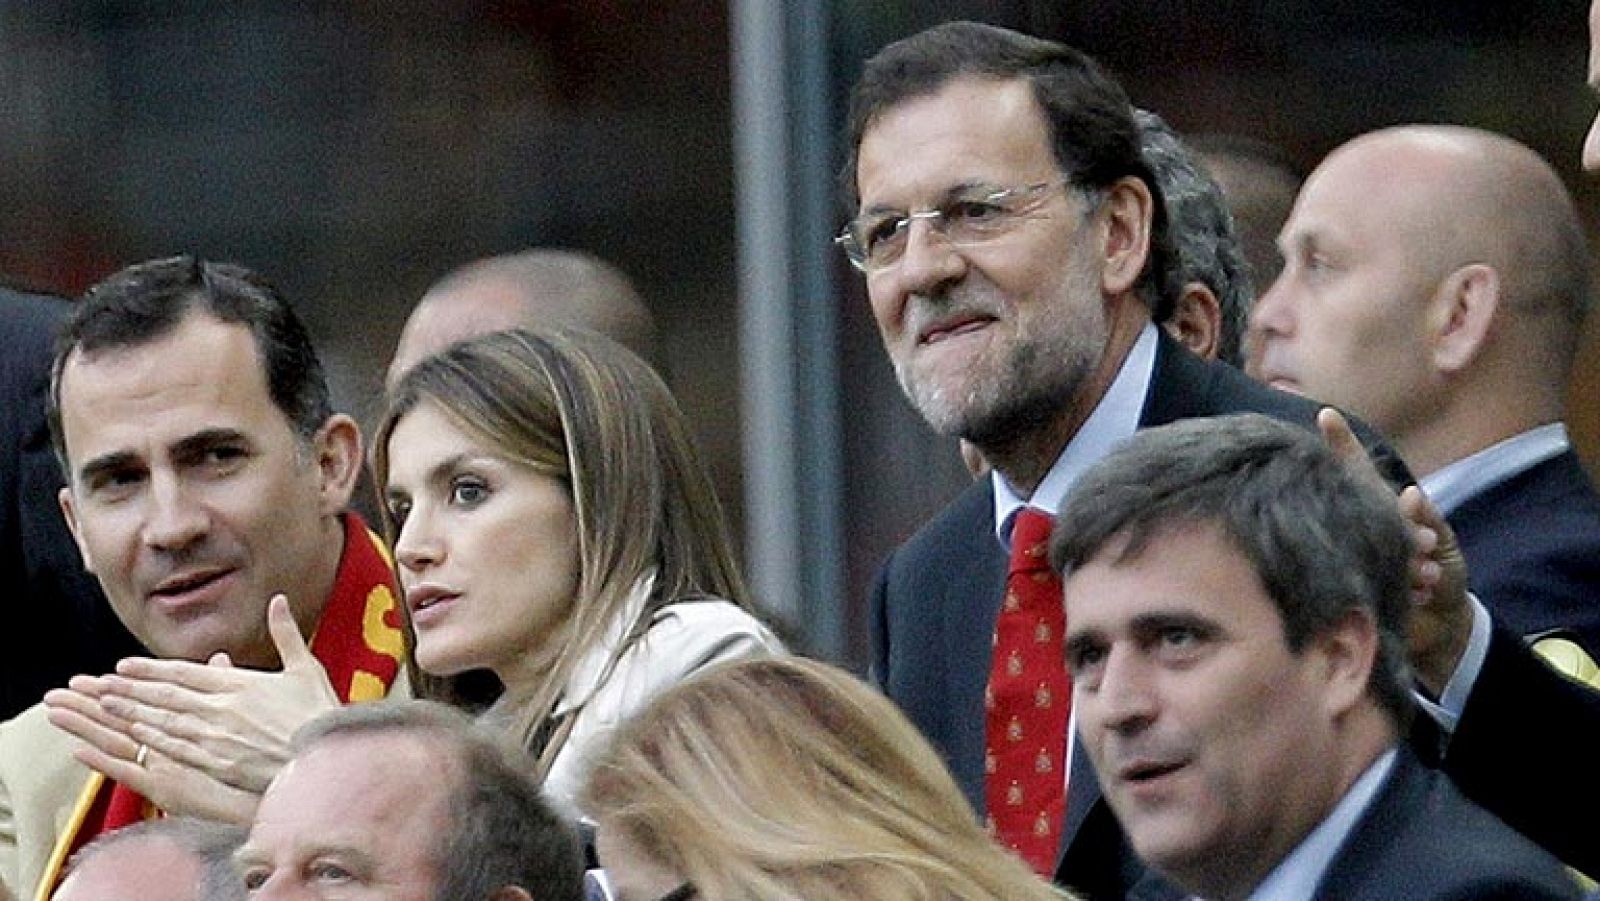 Los príncipes de Asturias, don Felipe y doña Leticia, junto al presidente del Gobierno, Mariano Rajoy, en el partido contra Italia de la presente Eurocopa 2012.